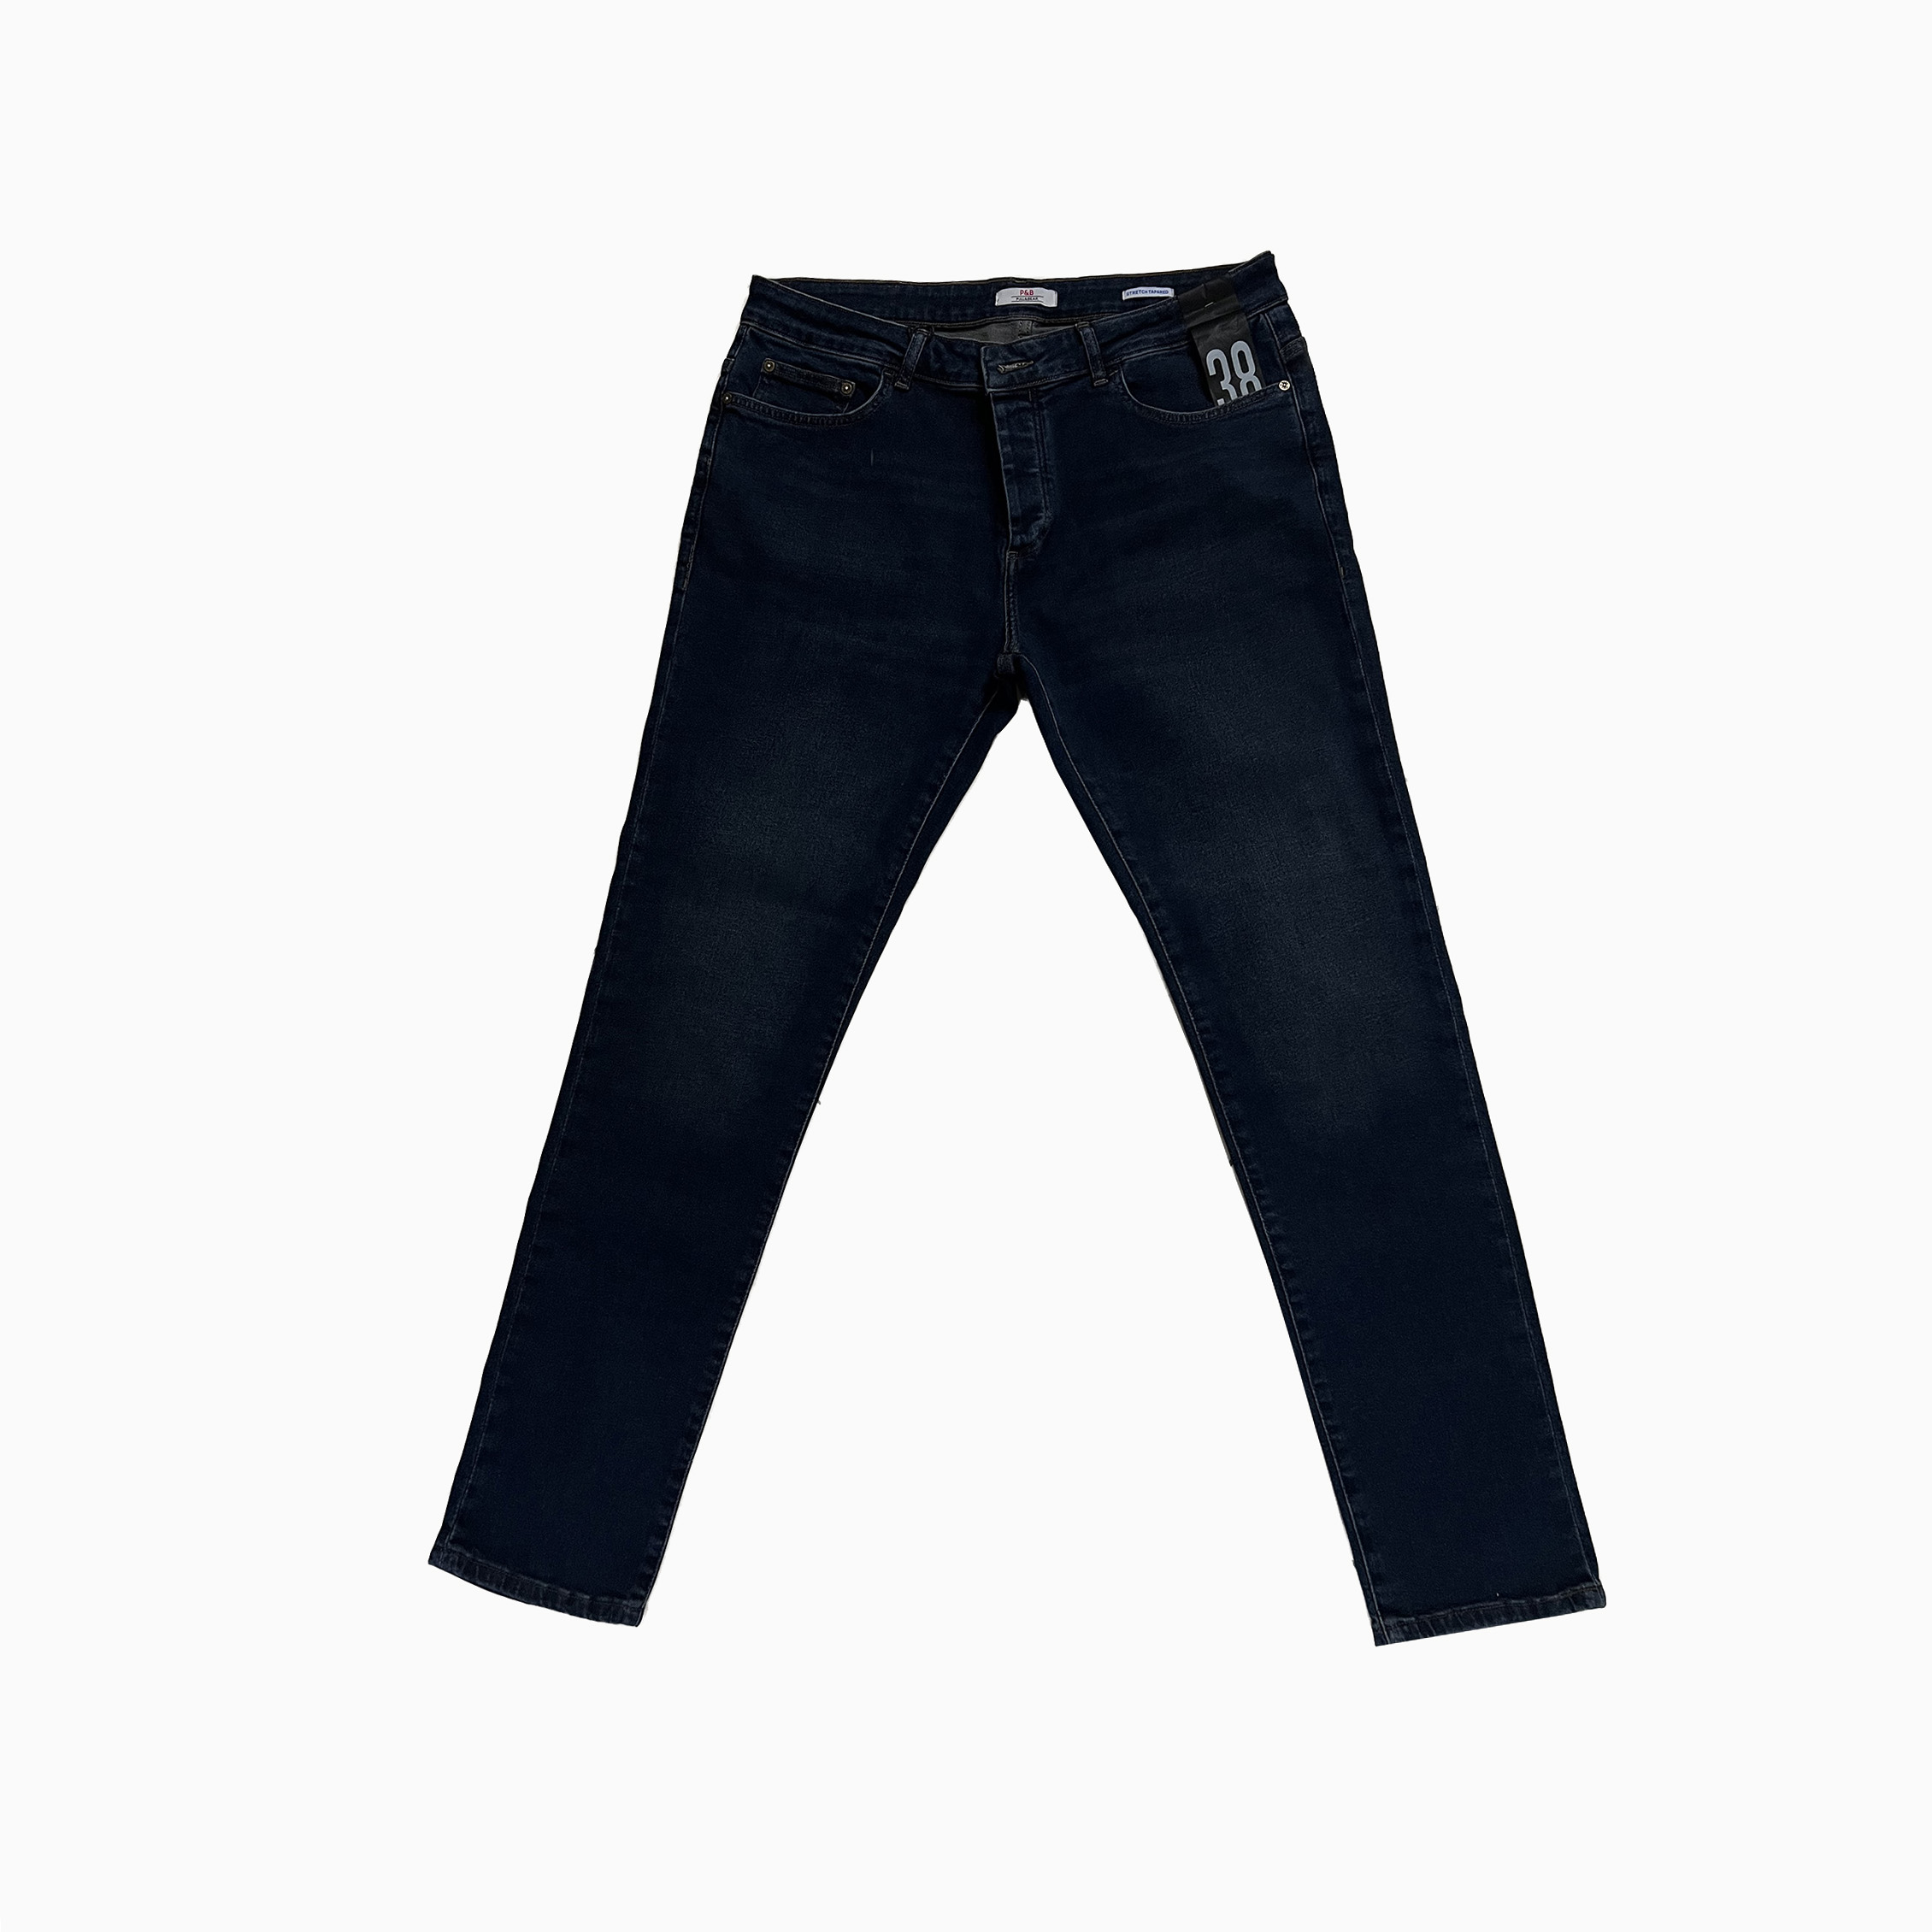 شلوار جین مردانه مدل sh01fb رنگ آبی تیره 4159955